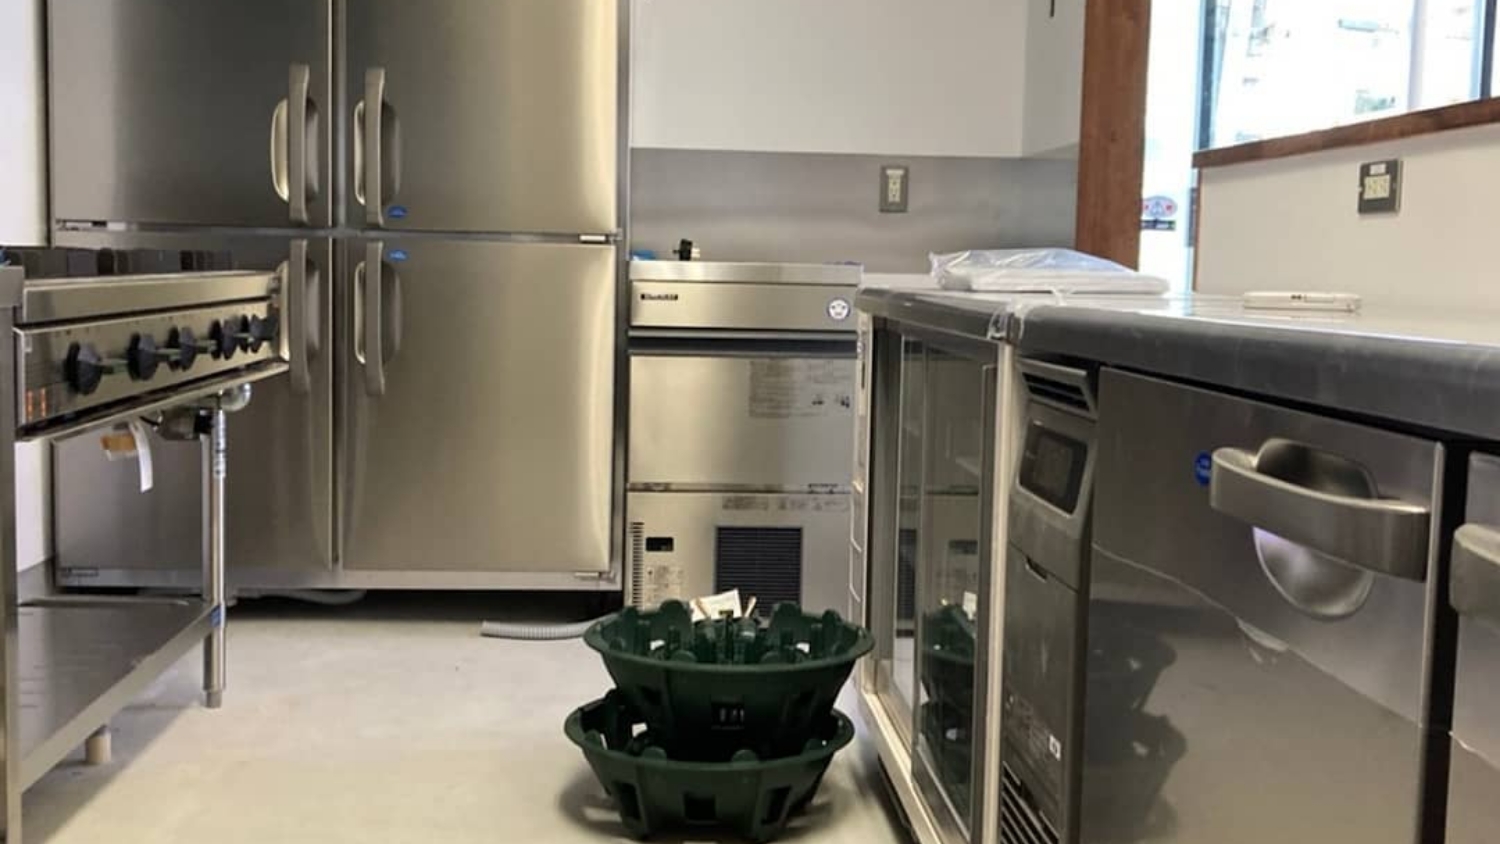 スープカレー店の新店舗オープンに厨房機器の導入